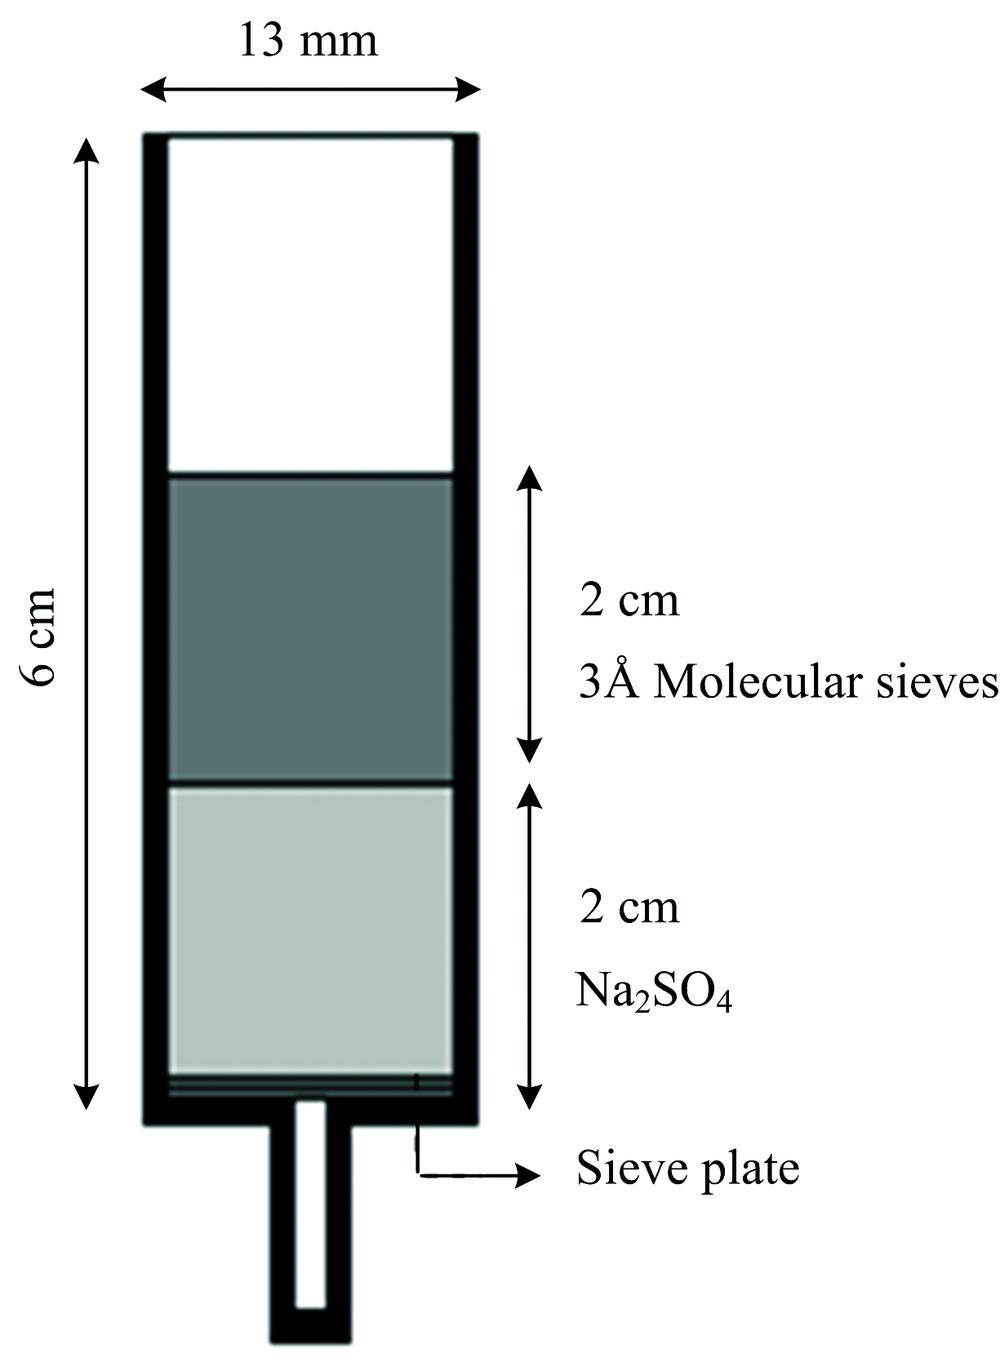 Pictorial representation of designed SPE cartridge